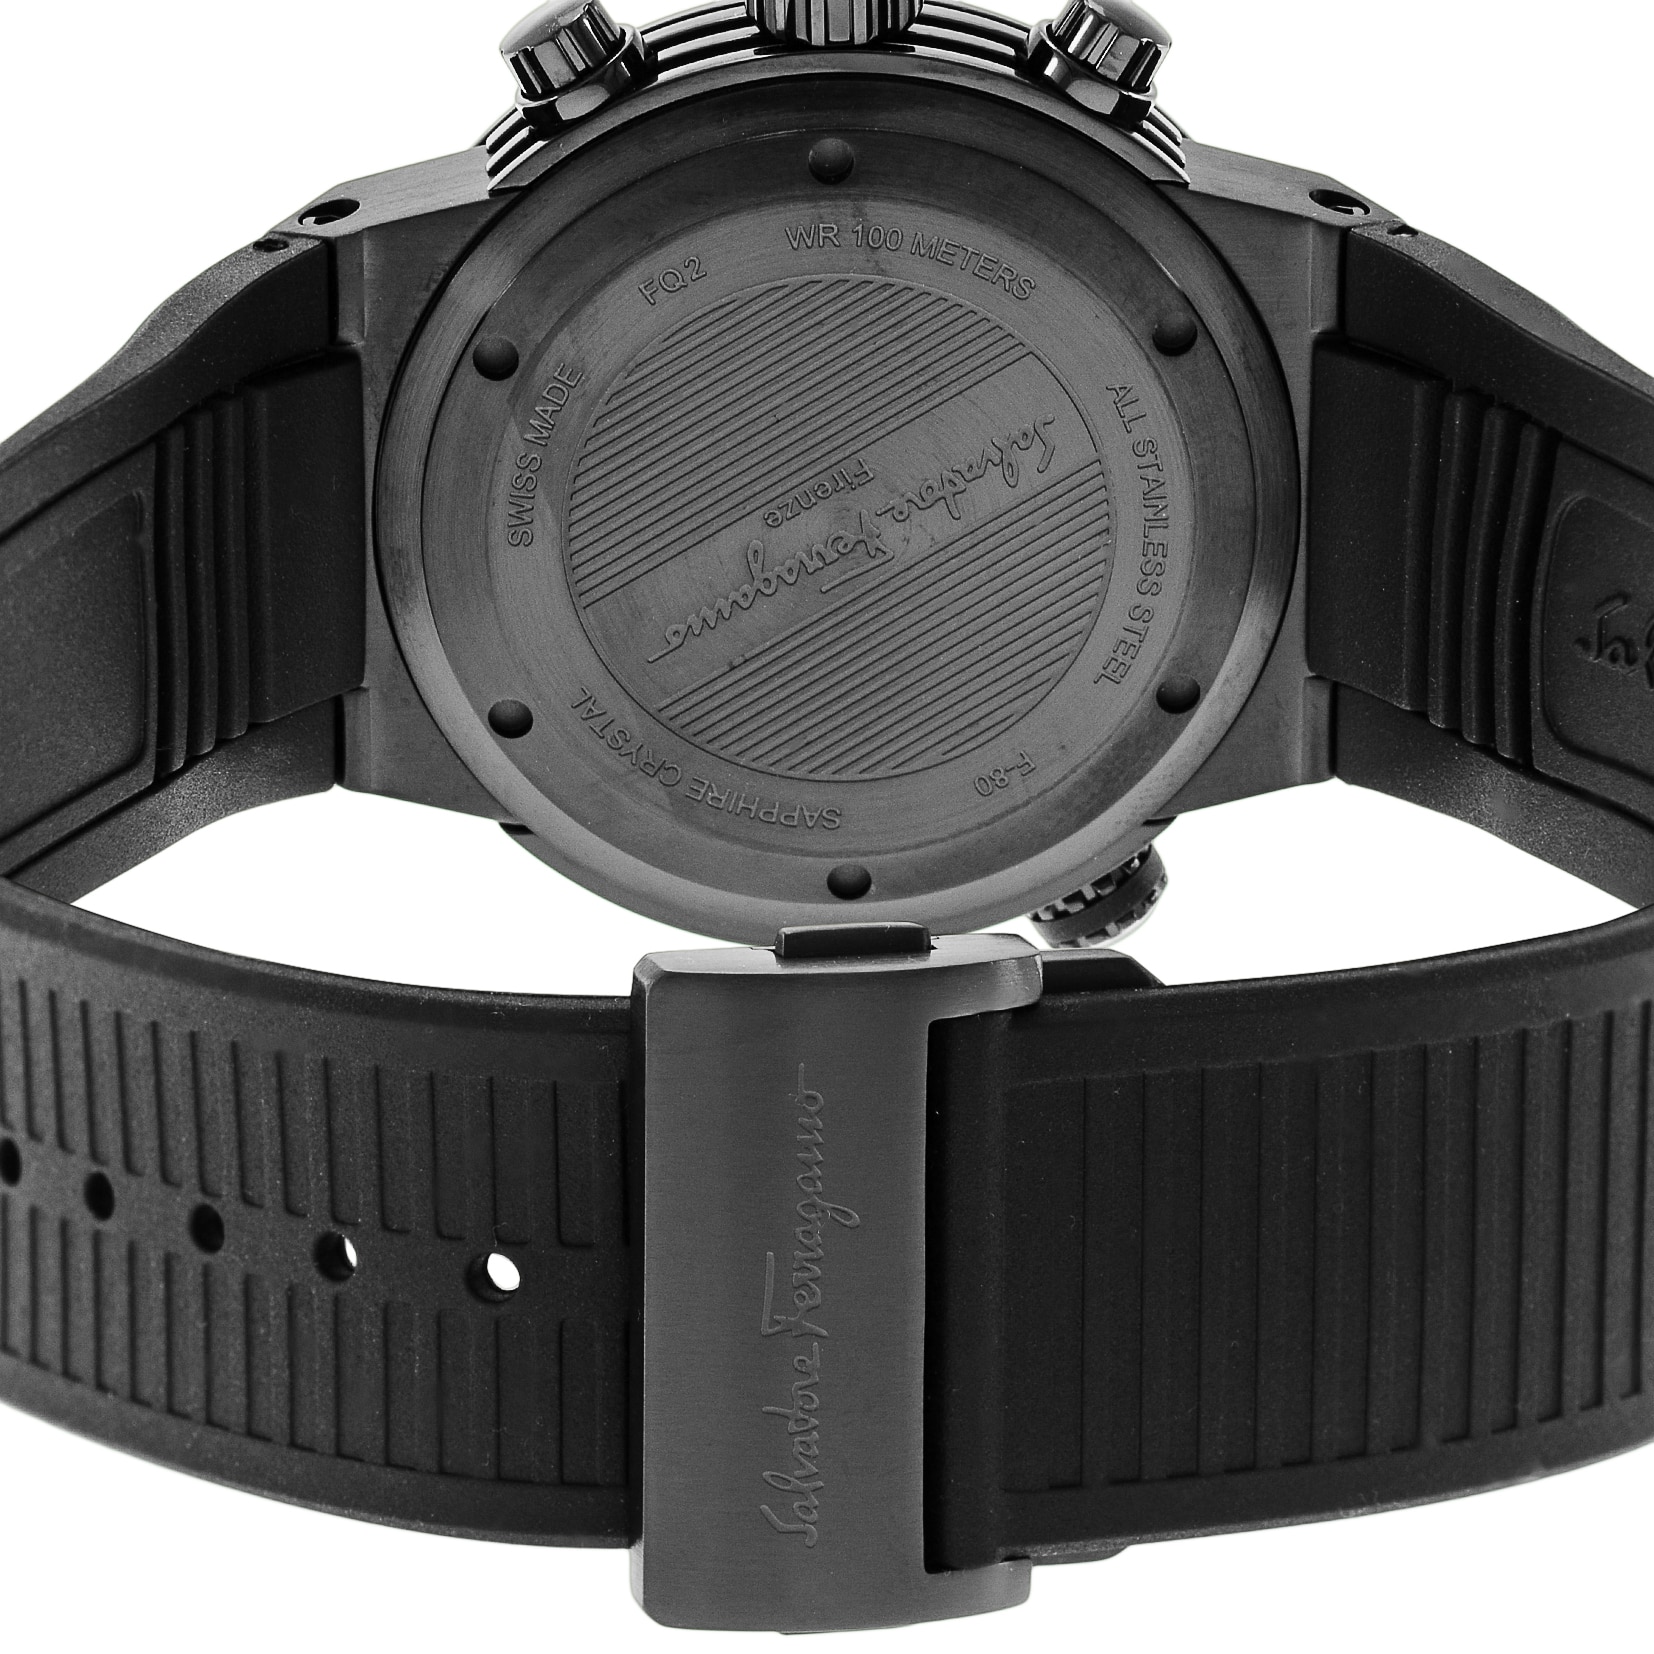 サルバトーレ フェラガモ Salvatore Ferragamo 腕時計 メンズ FQ2020013 F-80